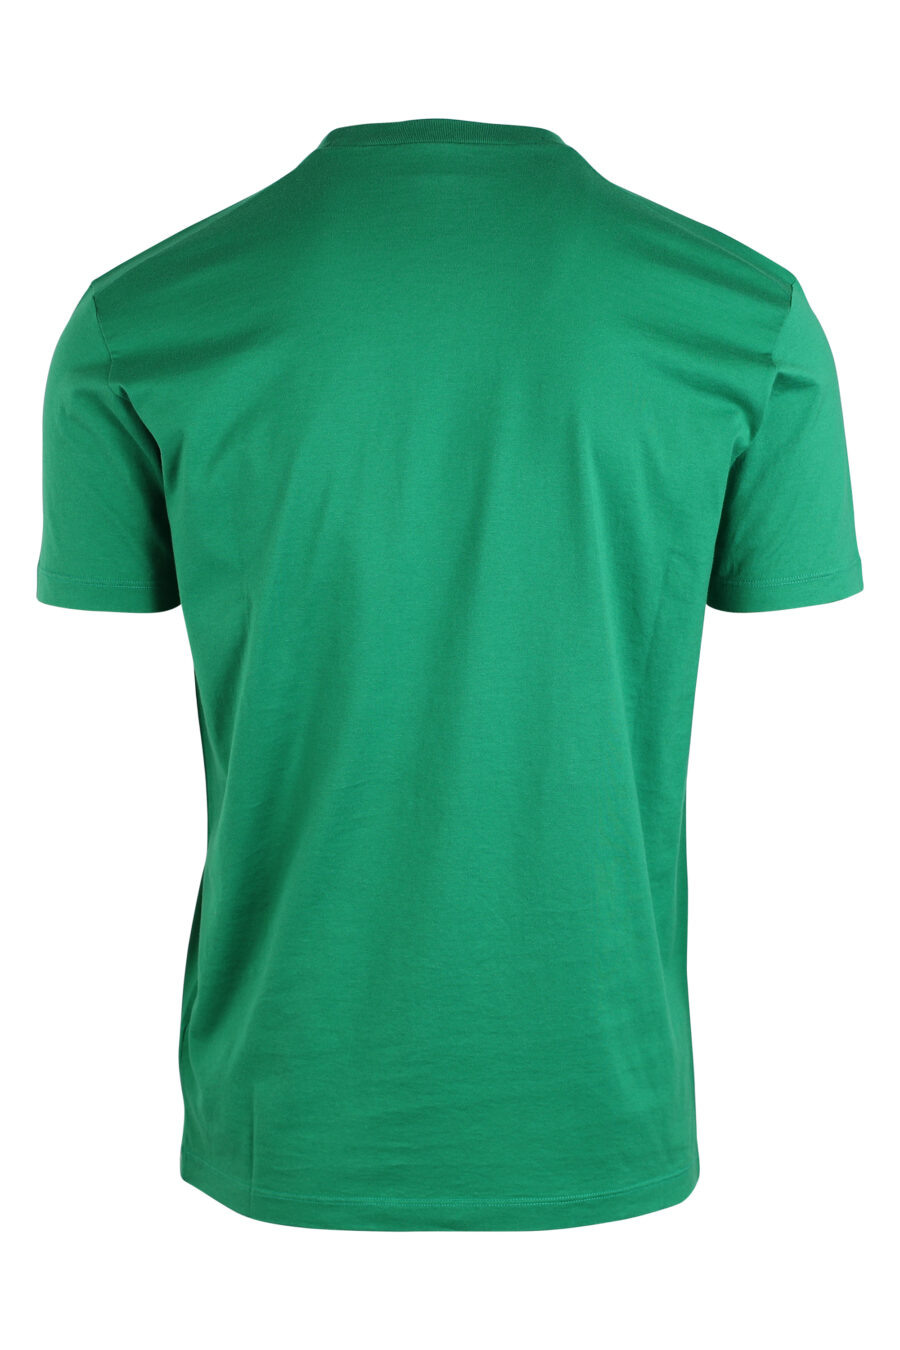 Camiseta verde con doble logo "icon" - IMG 0616